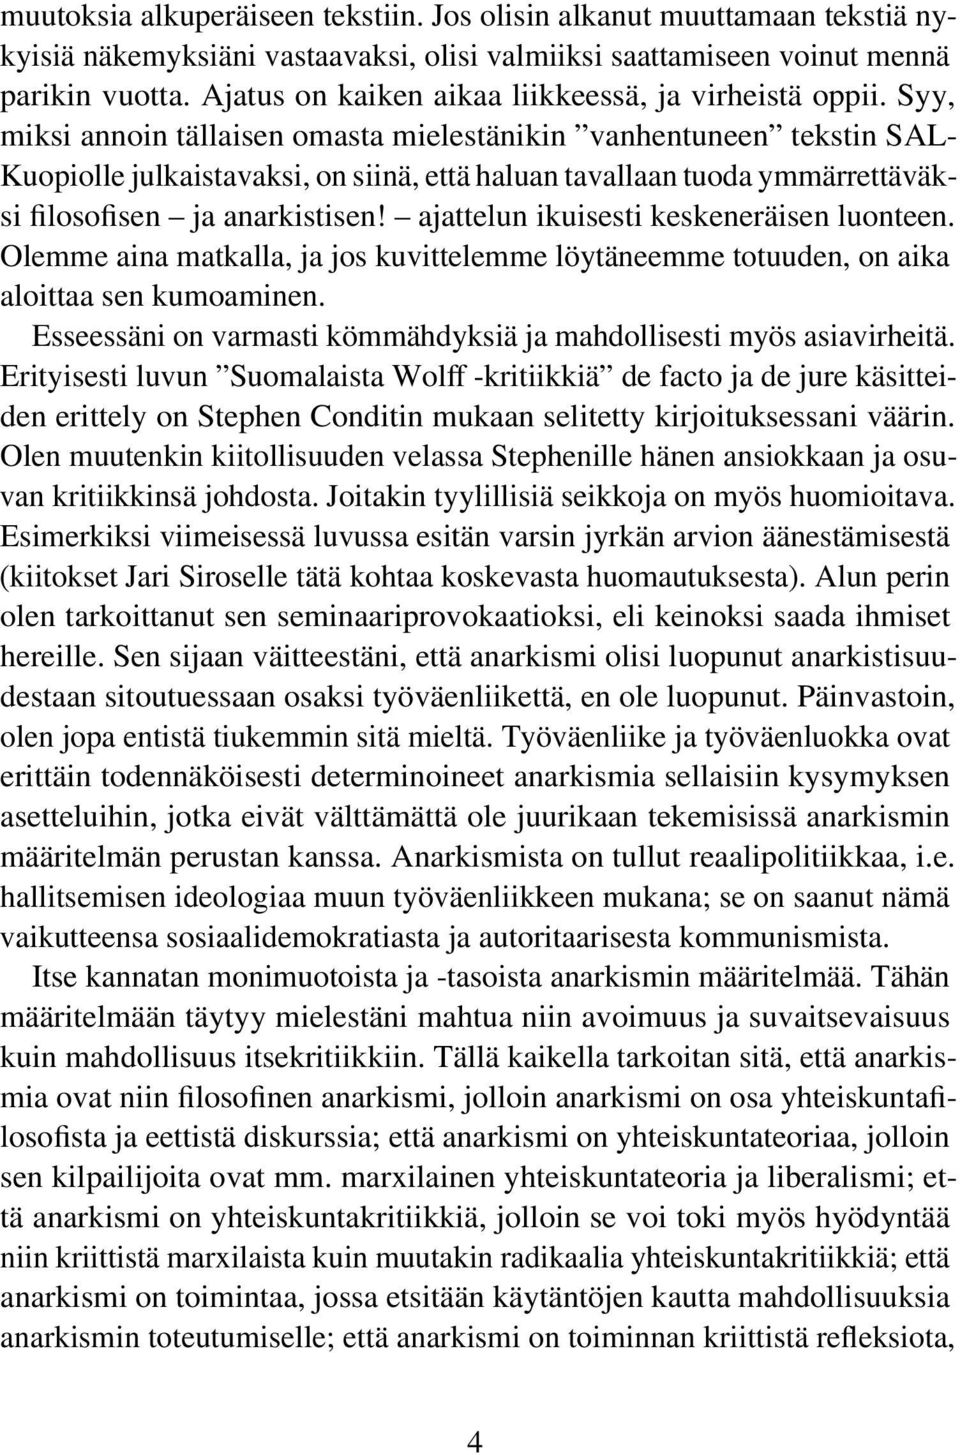 Syy, miksi annoin tällaisen omasta mielestänikin vanhentuneen tekstin SAL- Kuopiolle julkaistavaksi, on siinä, että haluan tavallaan tuoda ymmärrettäväksi filosofisen ja anarkistisen!